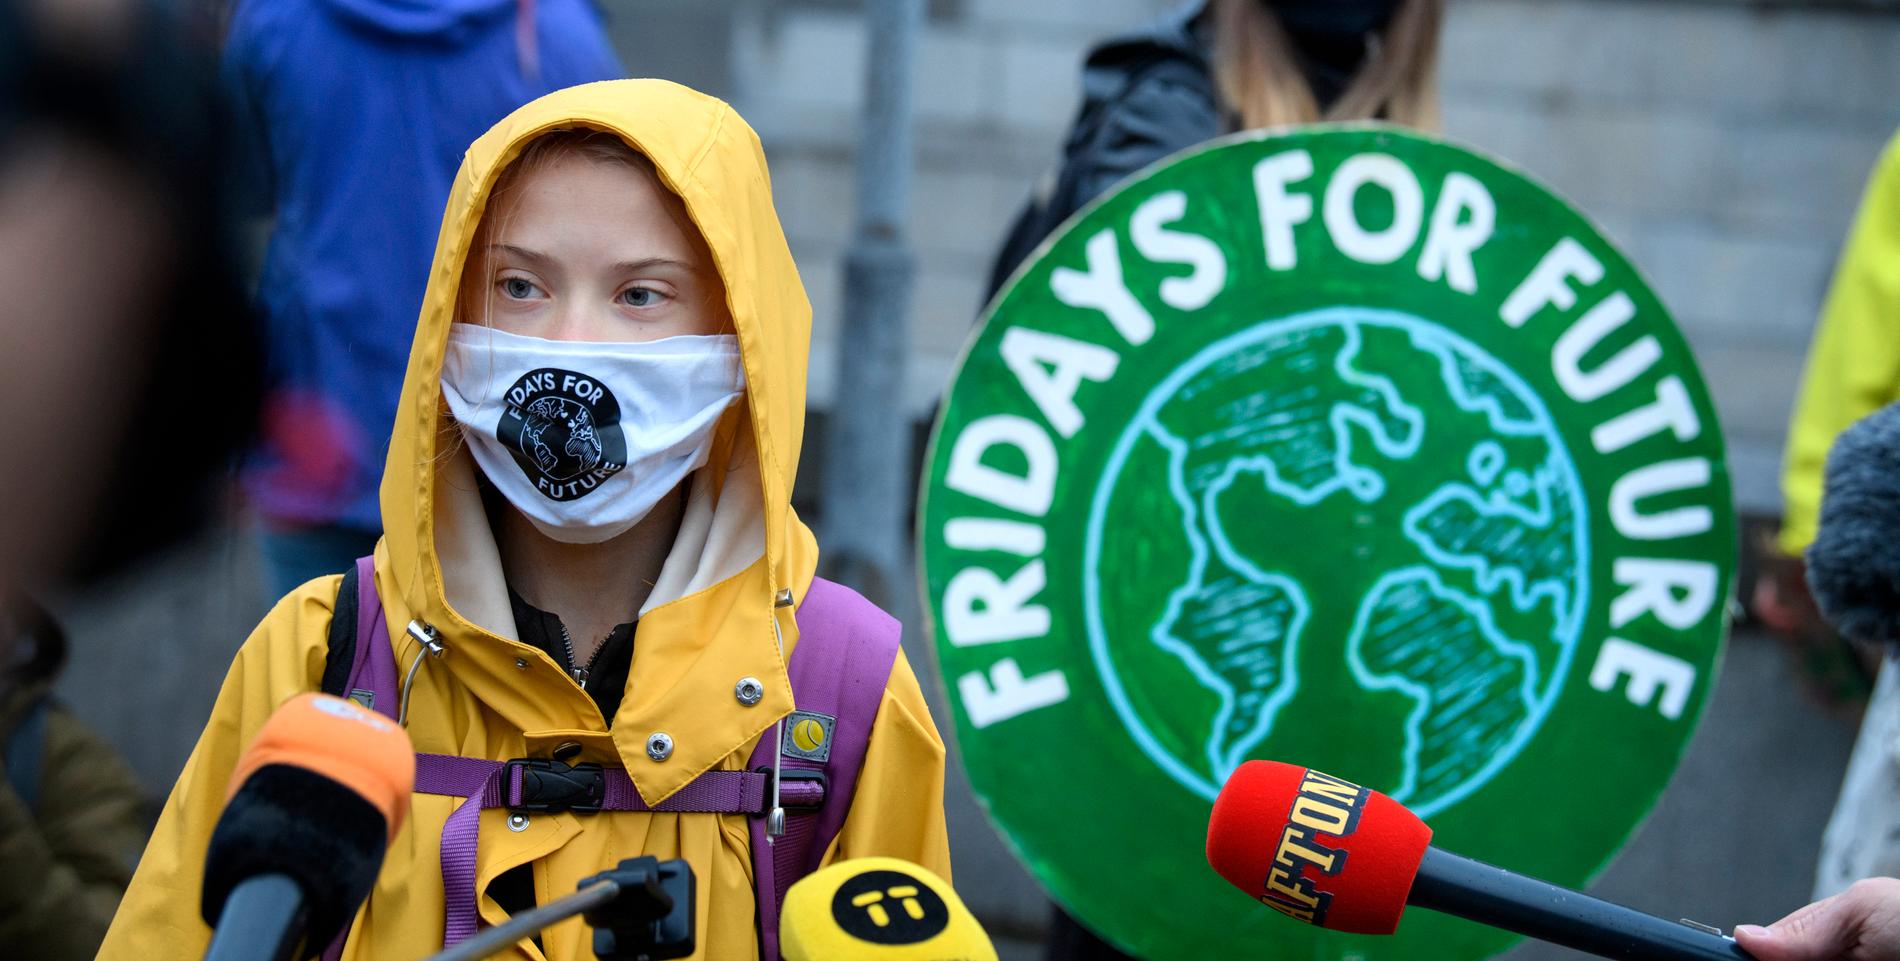 Greta Thunberg fortsätter att strejka för klimatet på fredagar även under coronapandemin.